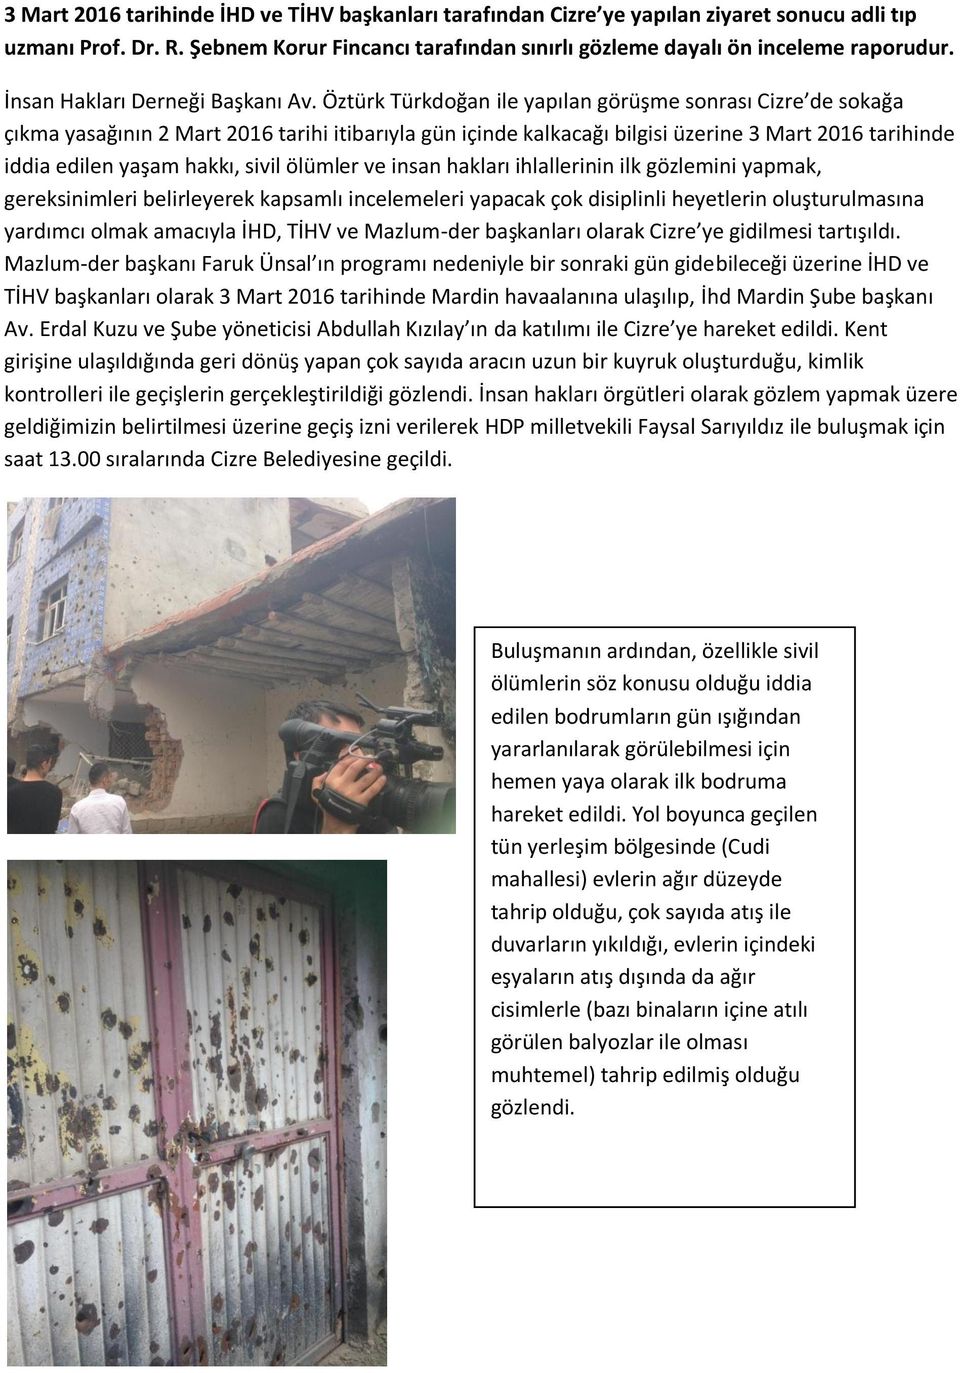 Öztürk Türkdoğan ile yapılan görüşme sonrası Cizre de sokağa çıkma yasağının 2 Mart 2016 tarihi itibarıyla gün içinde kalkacağı bilgisi üzerine 3 Mart 2016 tarihinde iddia edilen yaşam hakkı, sivil